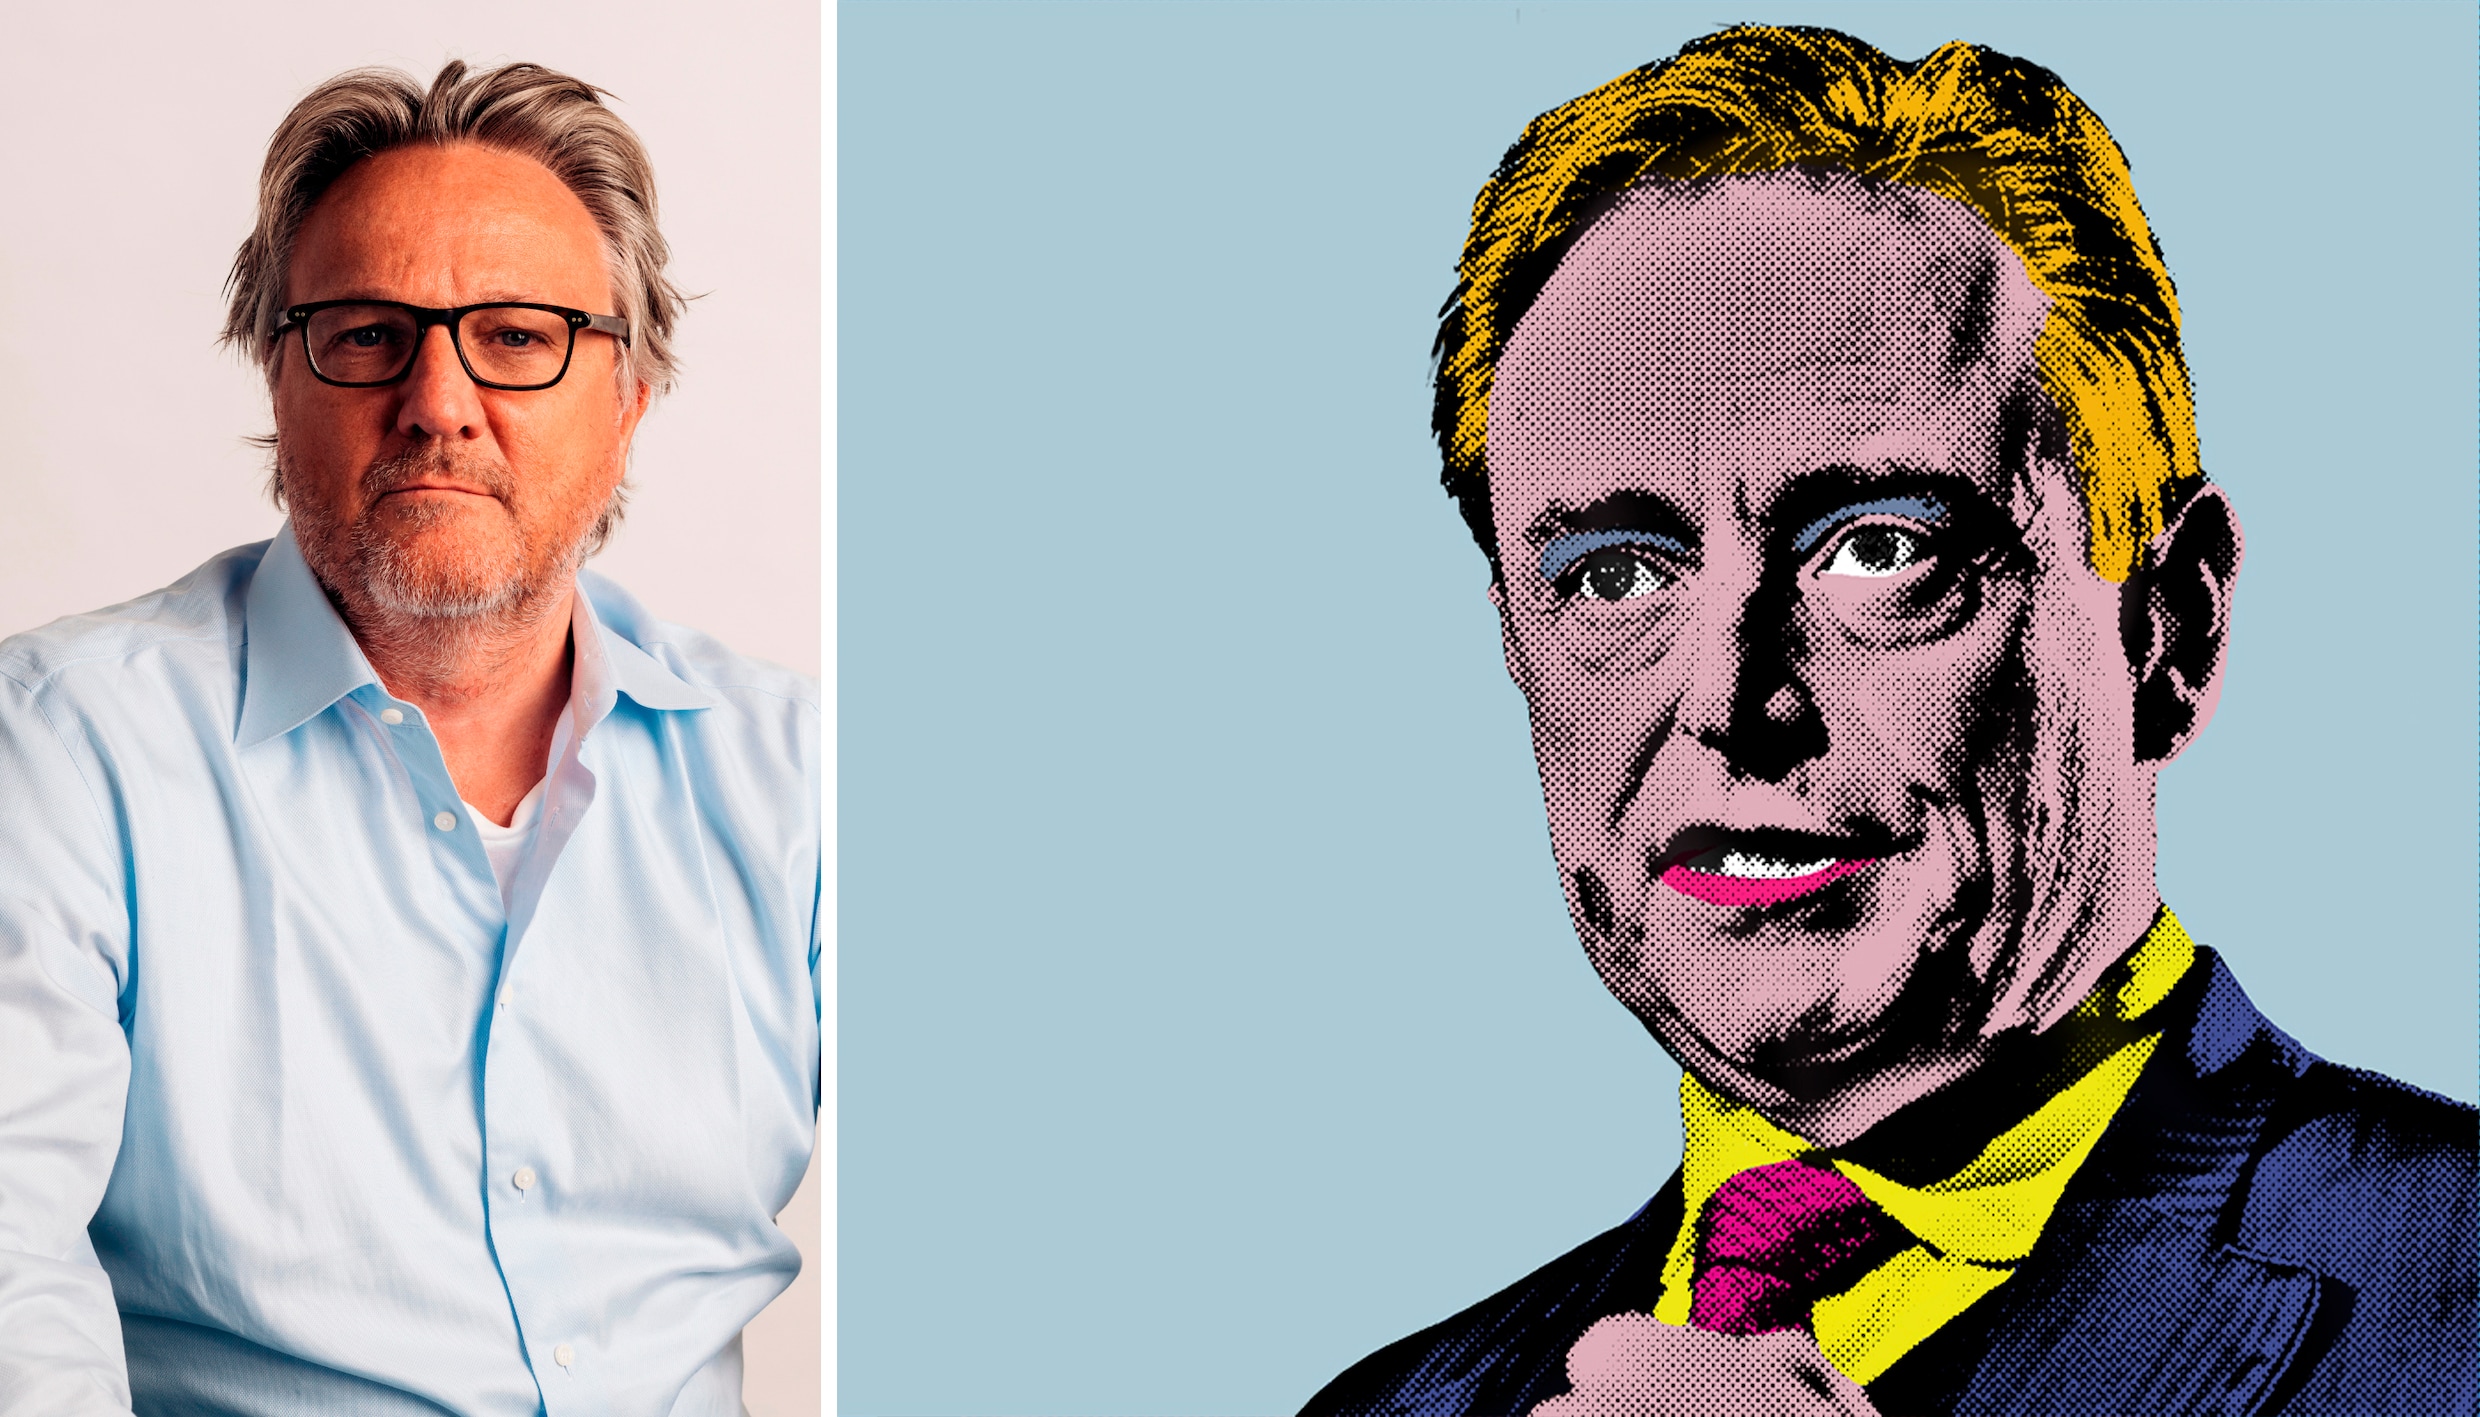 Beste Bart De Wever, uw paringsdans met Vlaams Belang is niet meer te harden